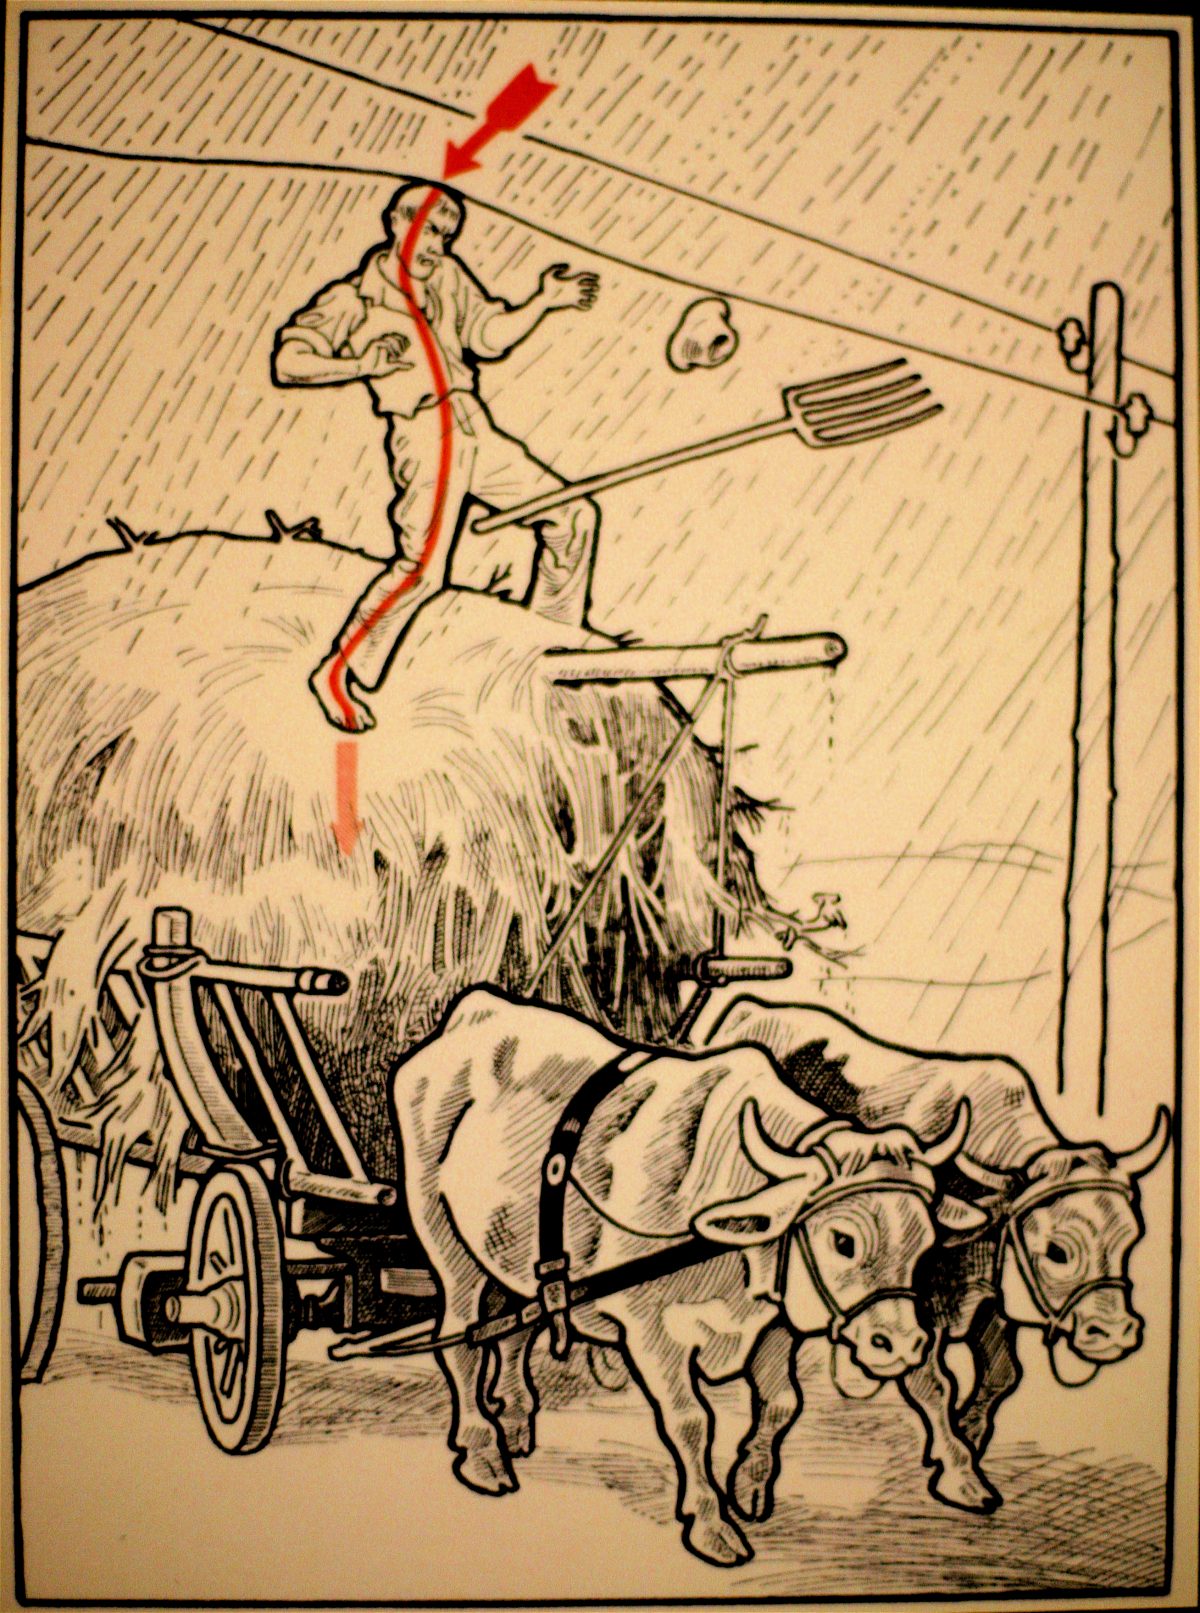 Elektroschutz in 132 Bildern’ (Electrical Protection in 132 Pictures) by Viennese physician Stefan Jellinek (1878-1968)